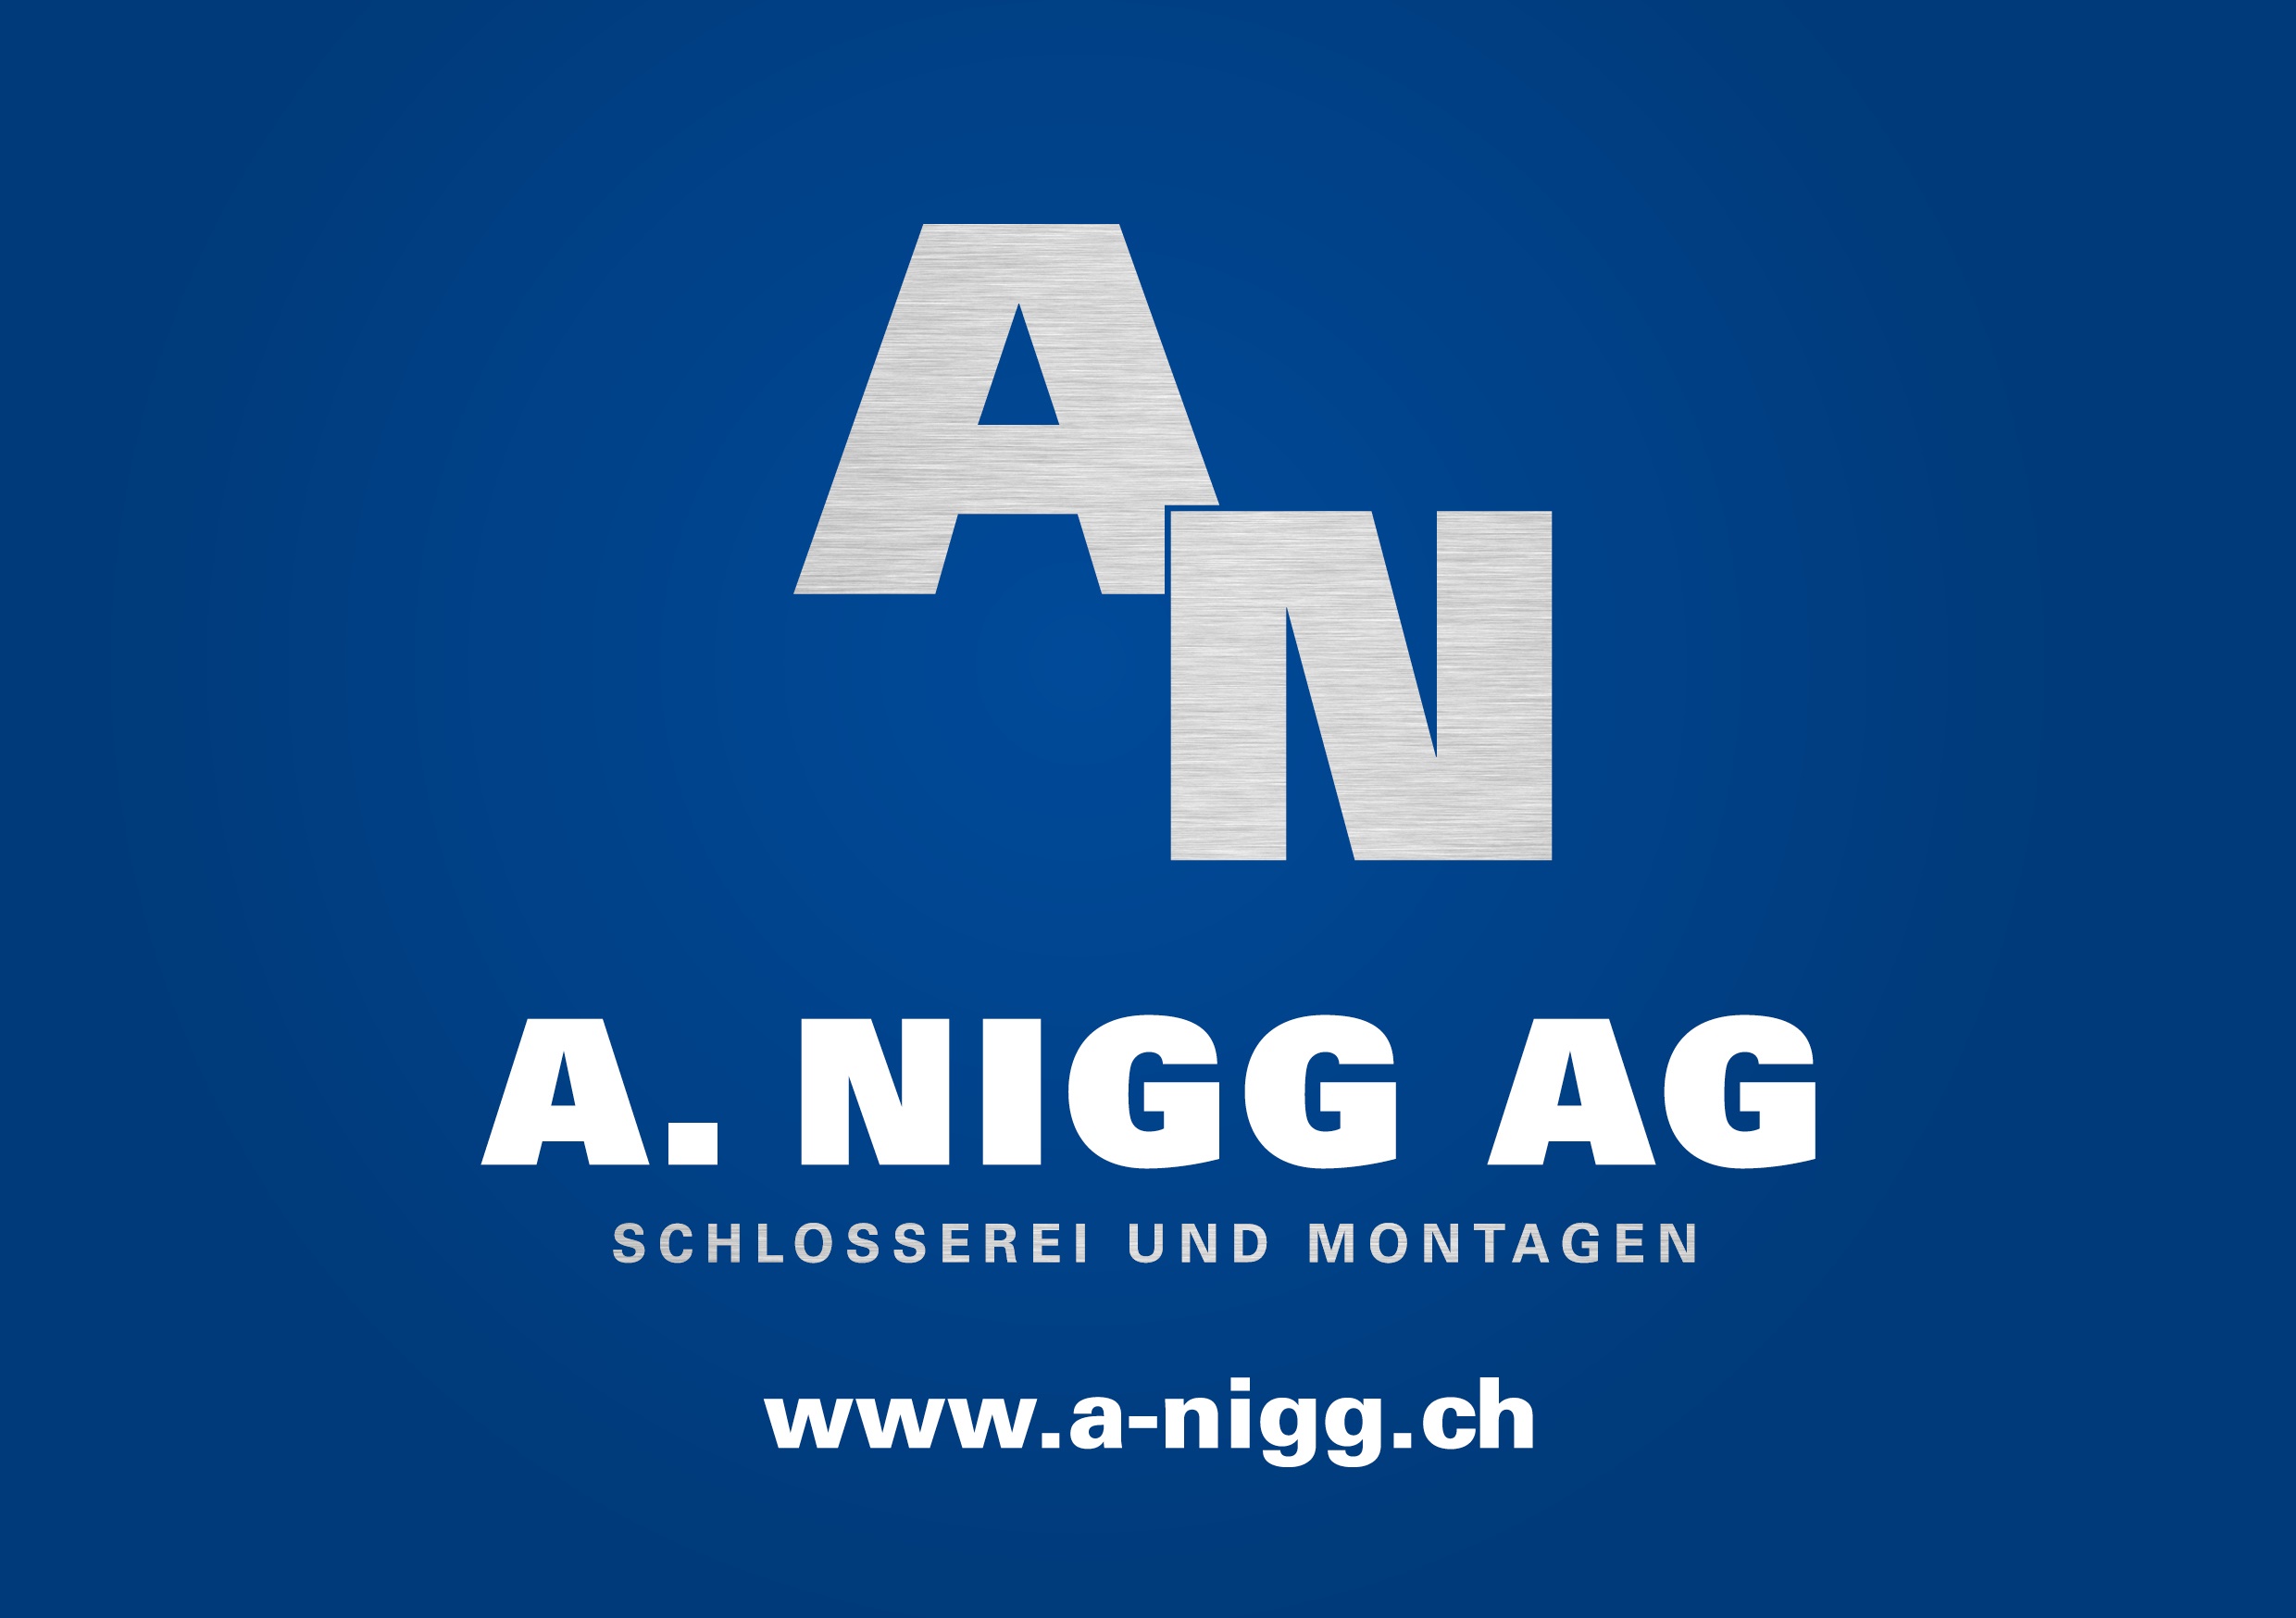 A. Nigg AG: Schlosserei und Montagen